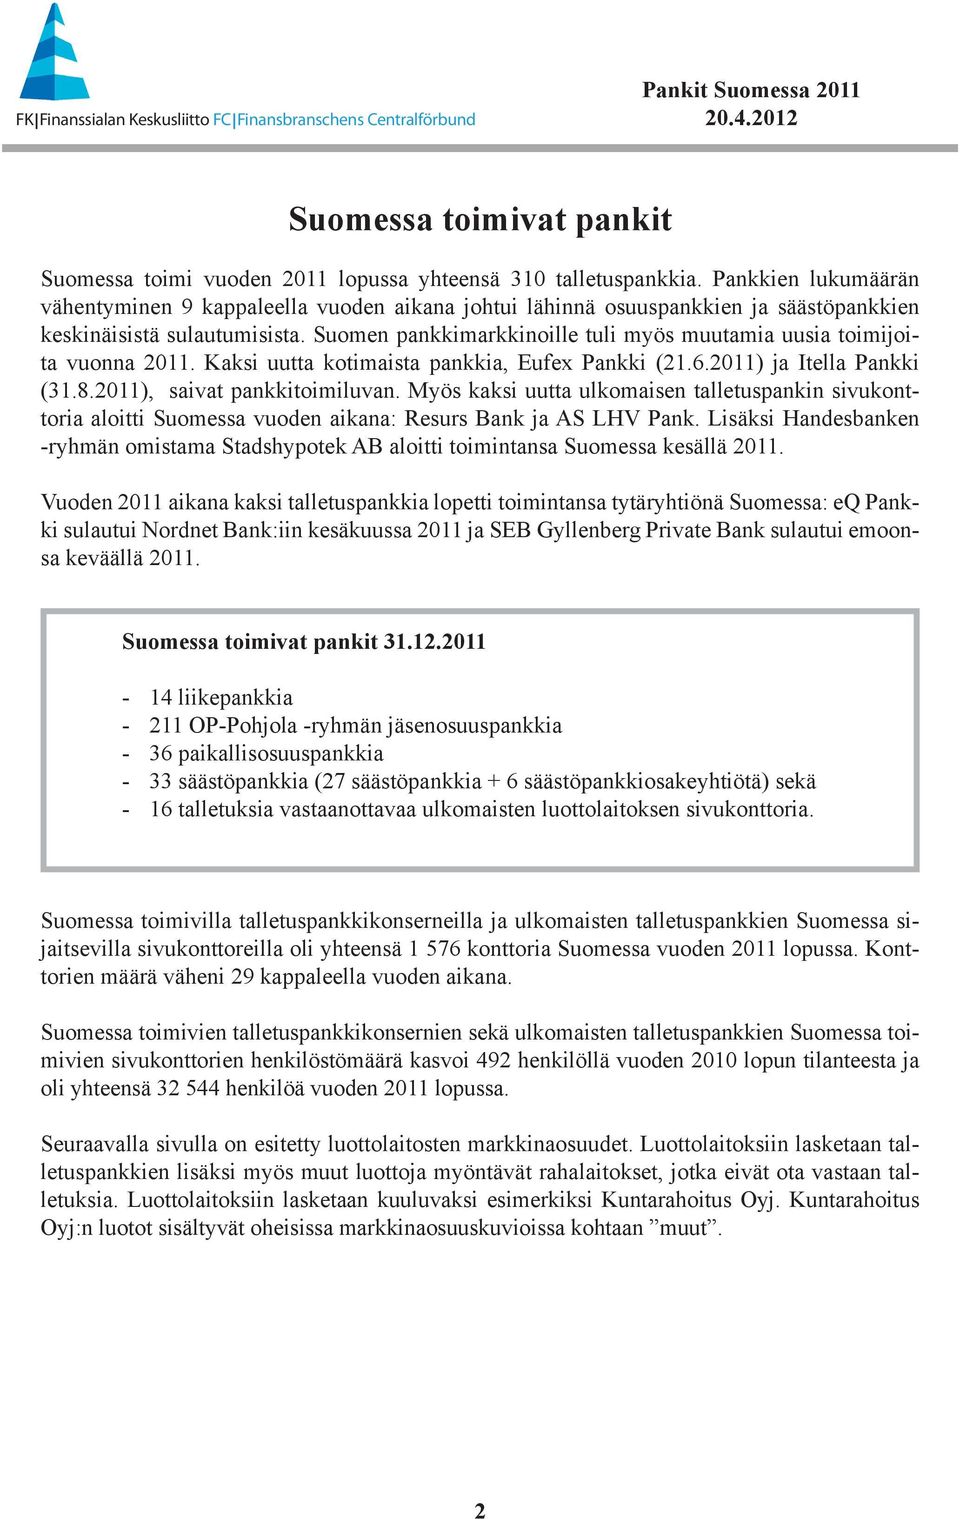 Suomen pankkimarkkinoille tuli myös muutamia uusia toimijoita vuonna 2011. Kaksi uutta kotimaista pankkia, Eufex Pankki (21.6.2011) ja Itella Pankki (31.8.2011), saivat pankkitoimiluvan.